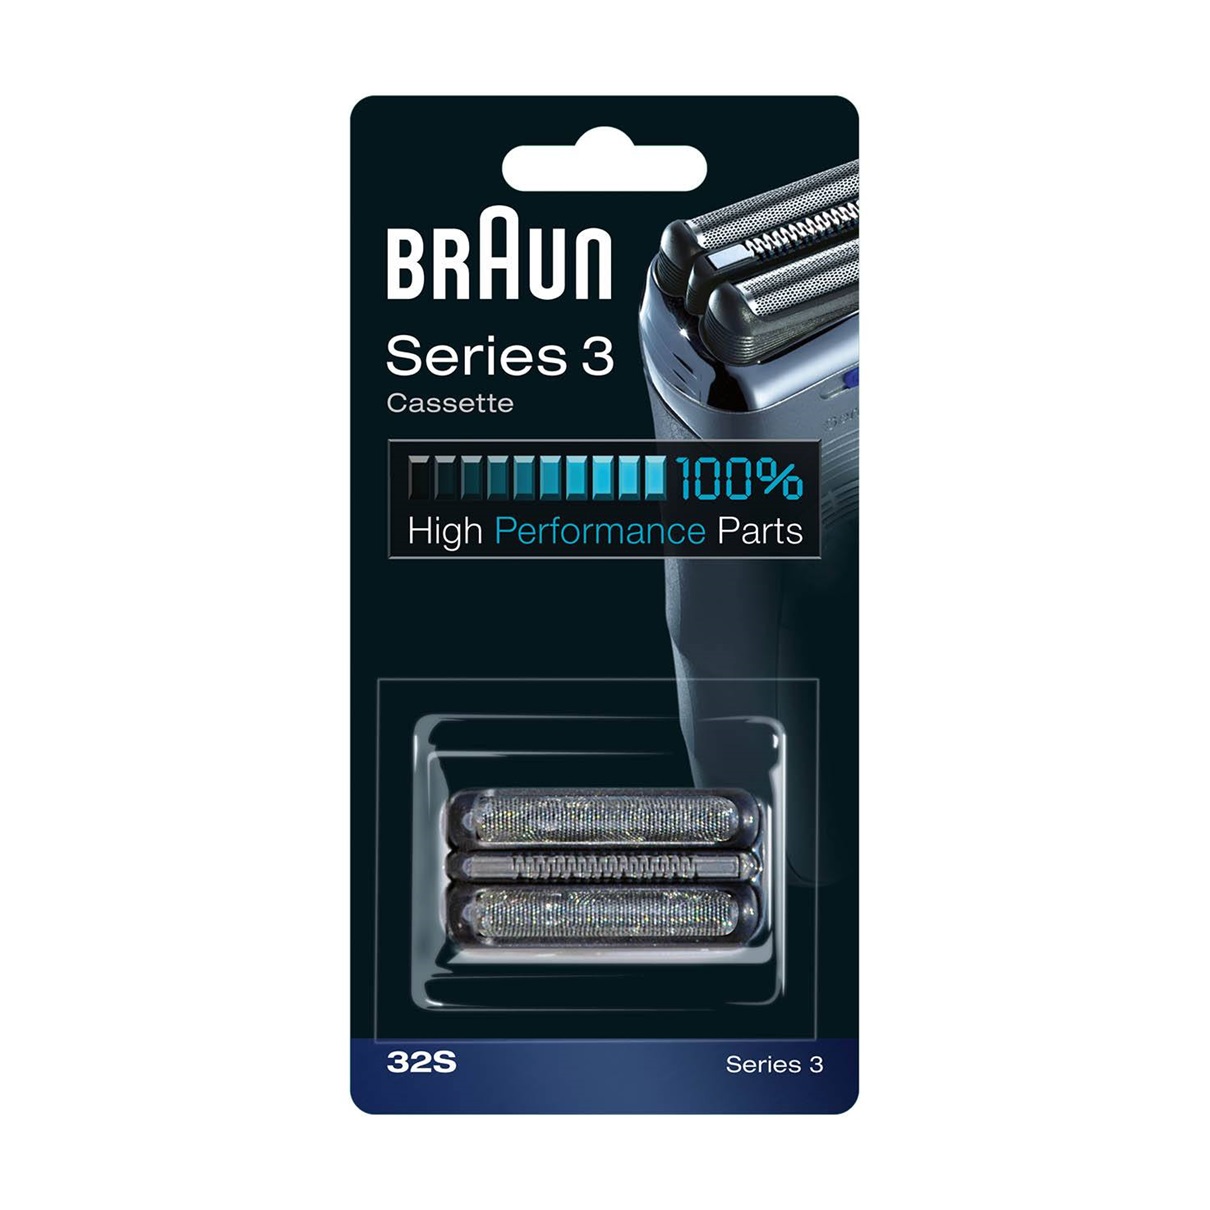 Сетка и режущий блок для бритв Braun 32S сетка и режущий блок для бритв braun cooltec 40b